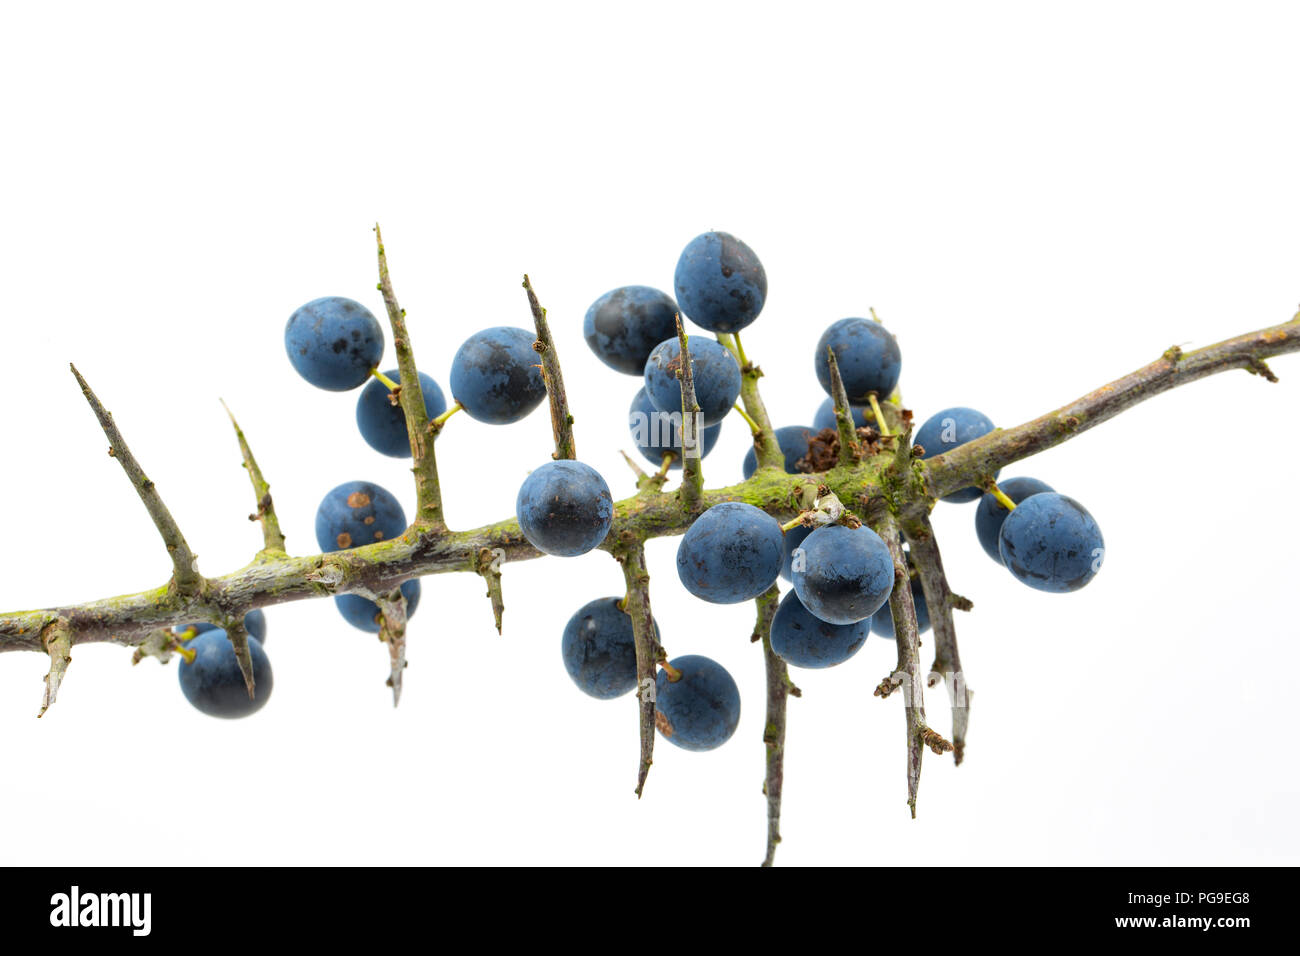 Beeren wachsen auf einem sloe, blackthorn Zweig, Prunus Spinosa. Die Frucht der schlehe wird häufig verwendet, um Geschmack alkoholische Getränke mit Sloe Gin auf Stockfoto